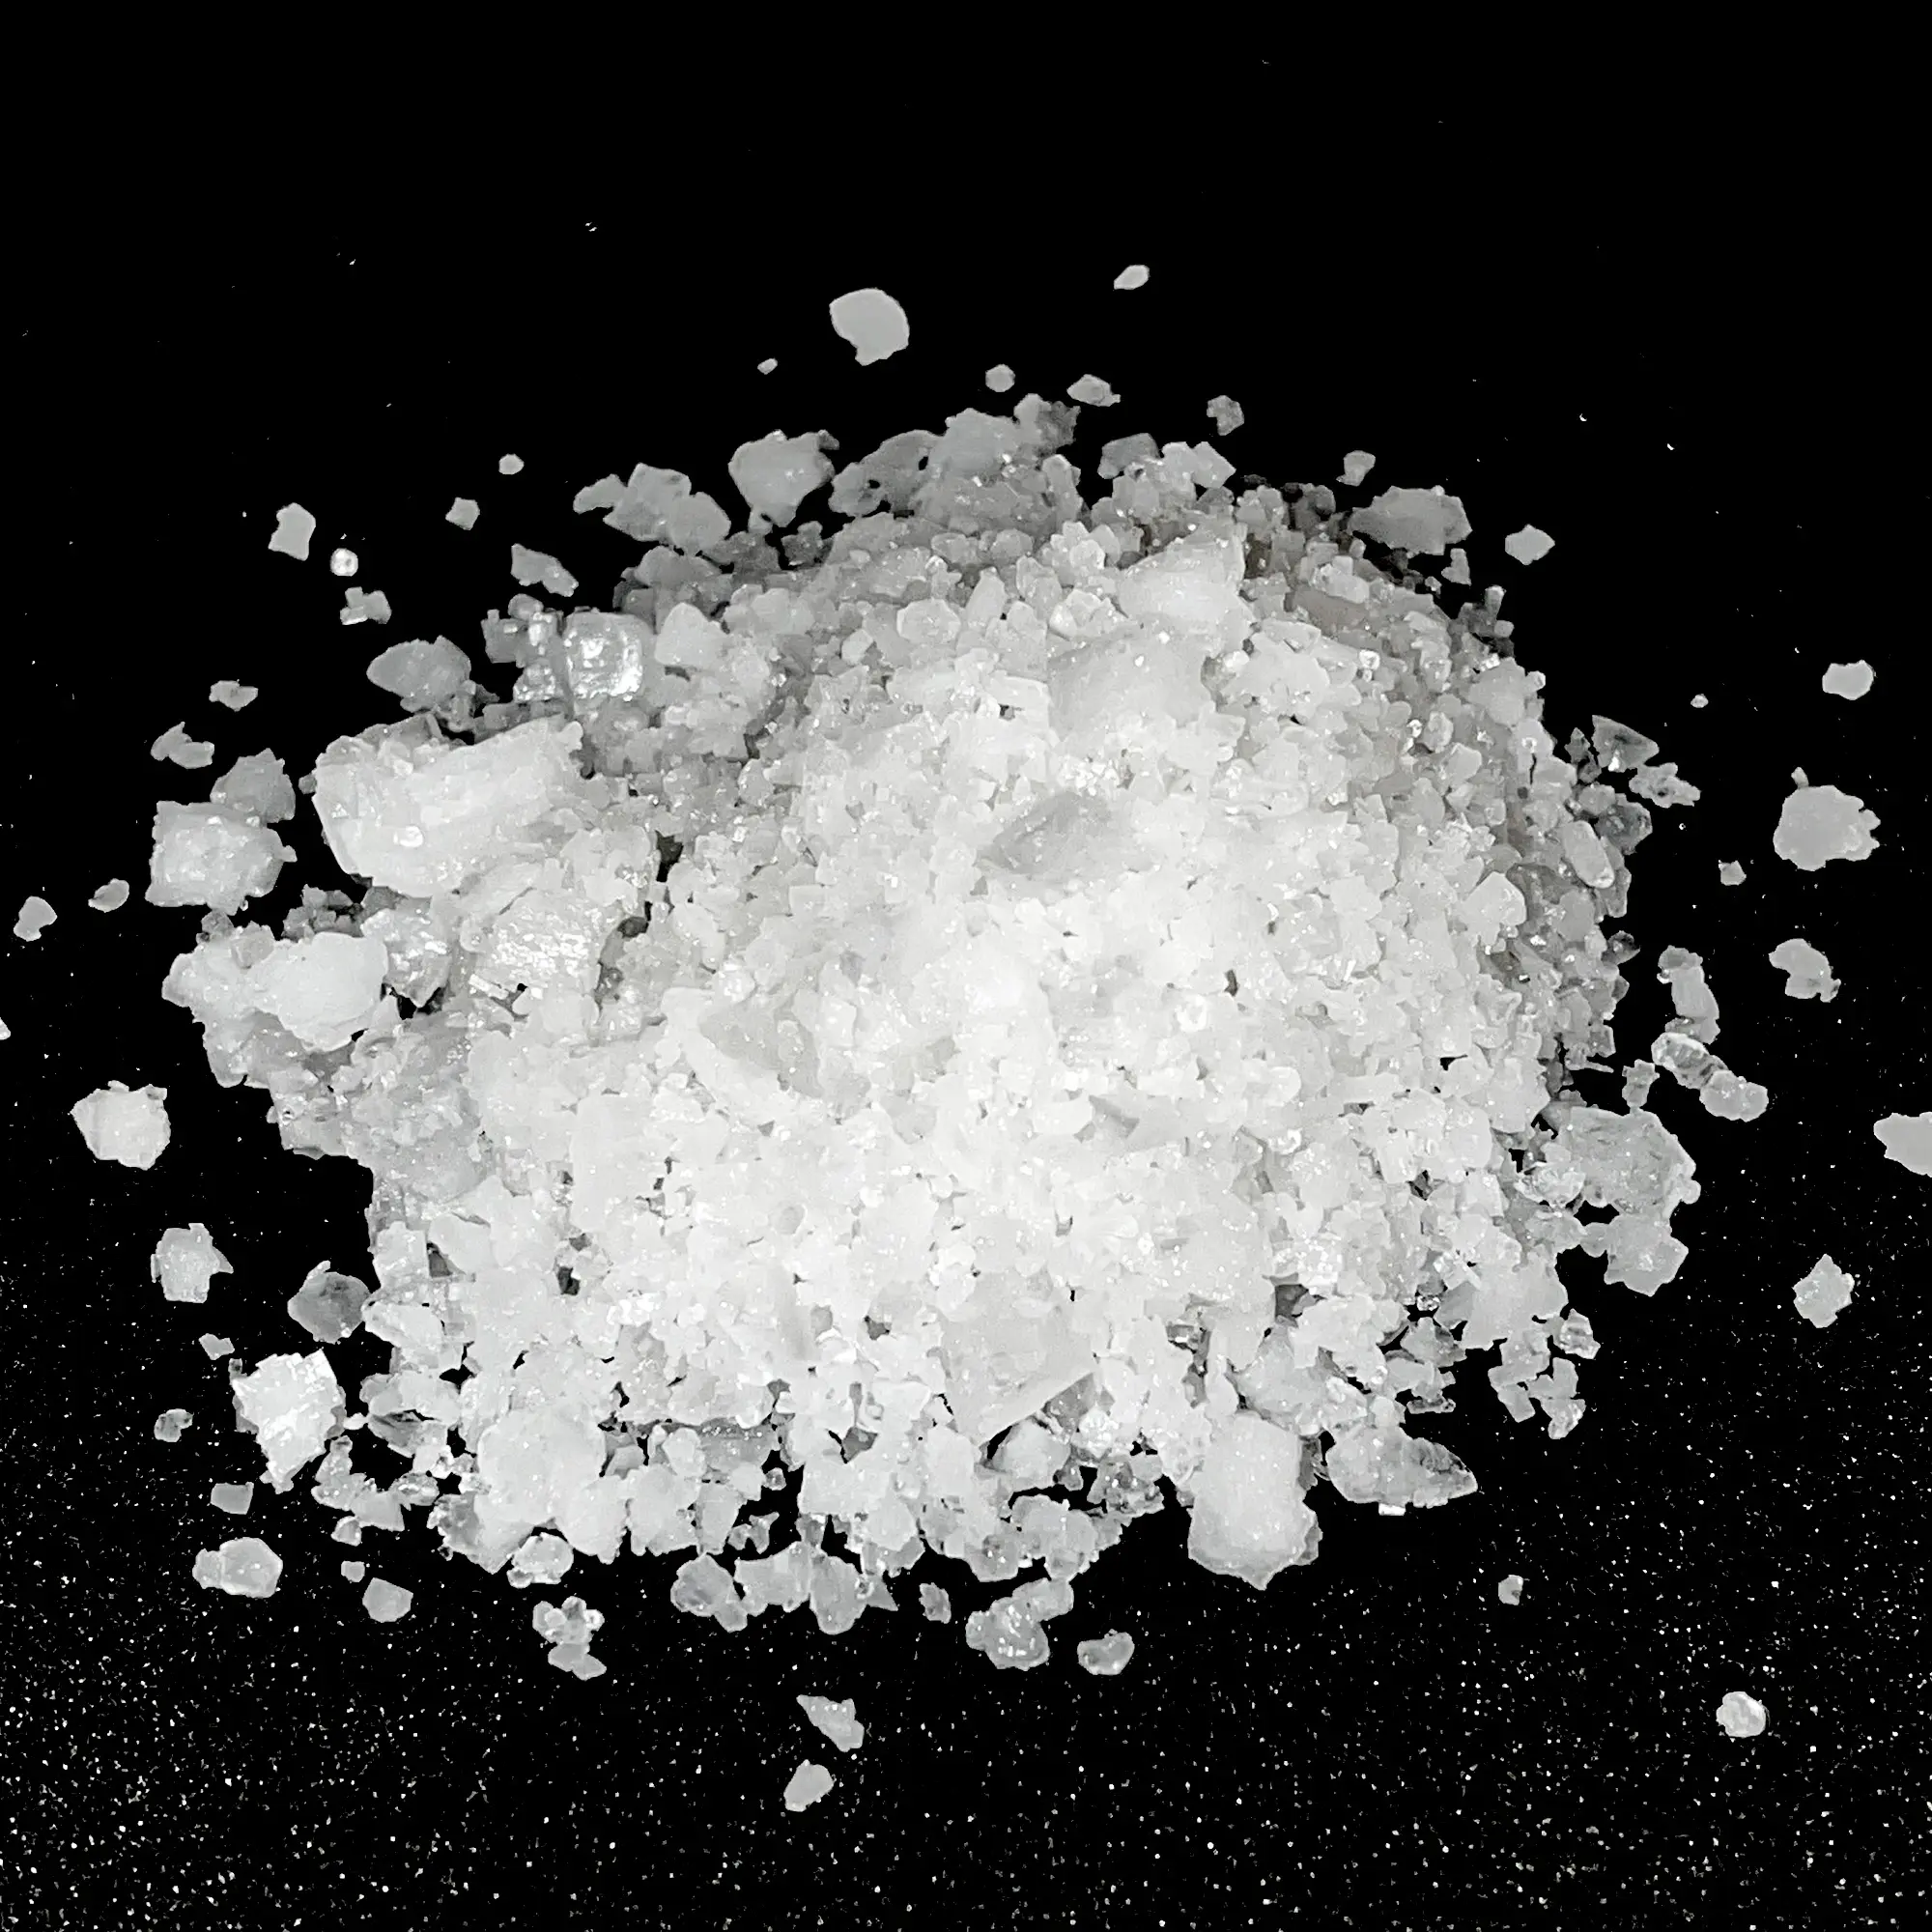 מלח סלע מליו מכובס כפול מכובס באיכות הטובה ביותר מלח תעשייתי ממצרים מוכן לייצוא בסיטונאי במחירים הטובים ביותר